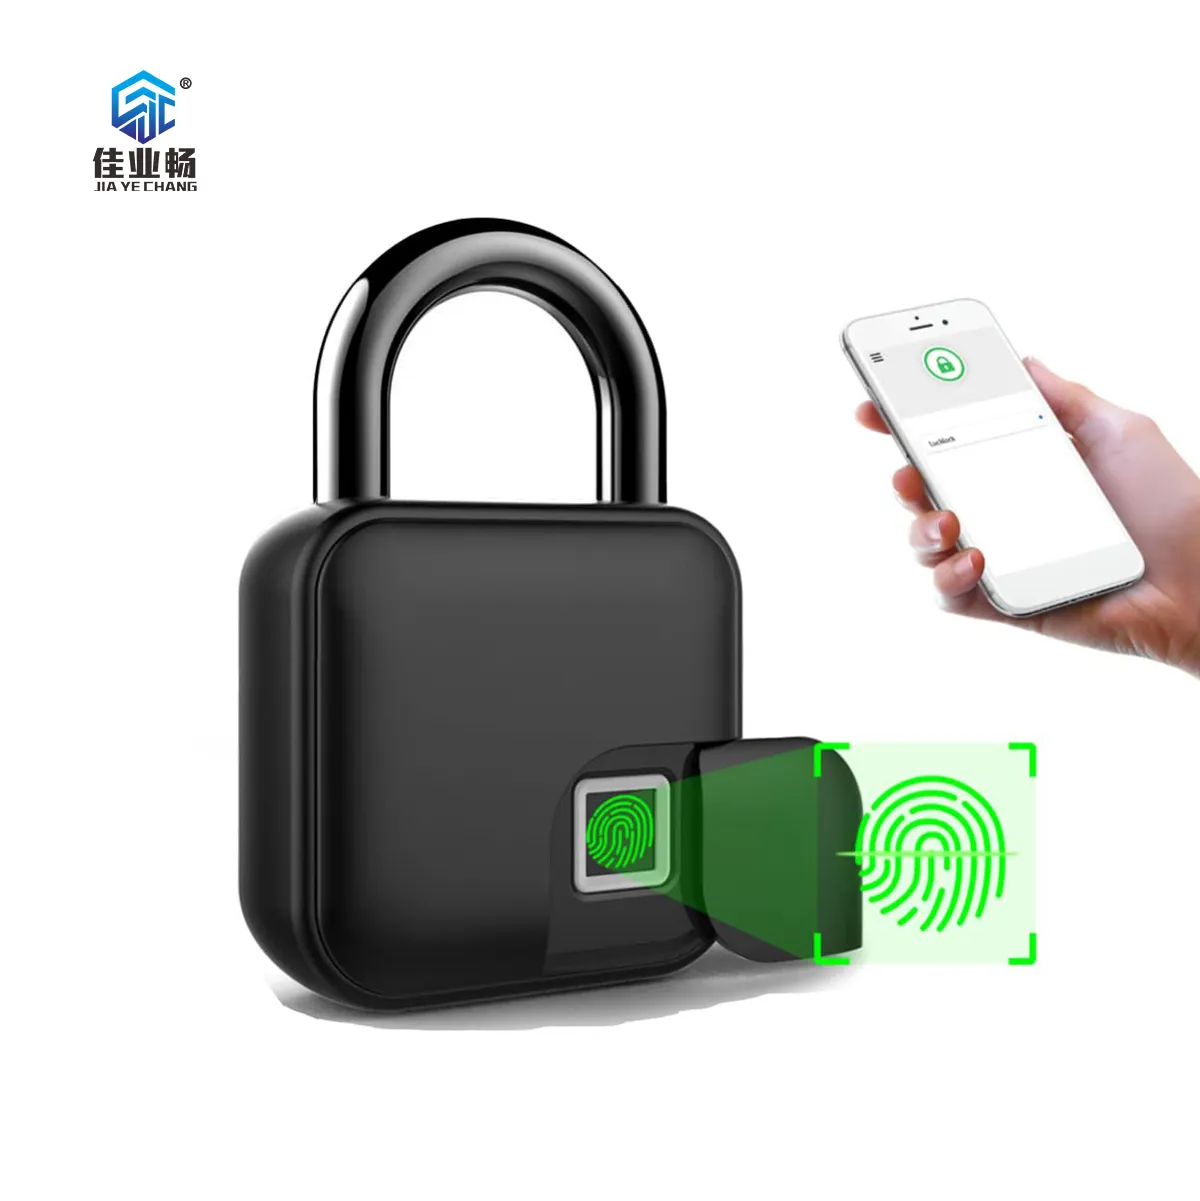 Fechadura inteligente com impressão digital para bagagem, cadeado com chave de segurança inteligente com impressão digital, carregado por USB